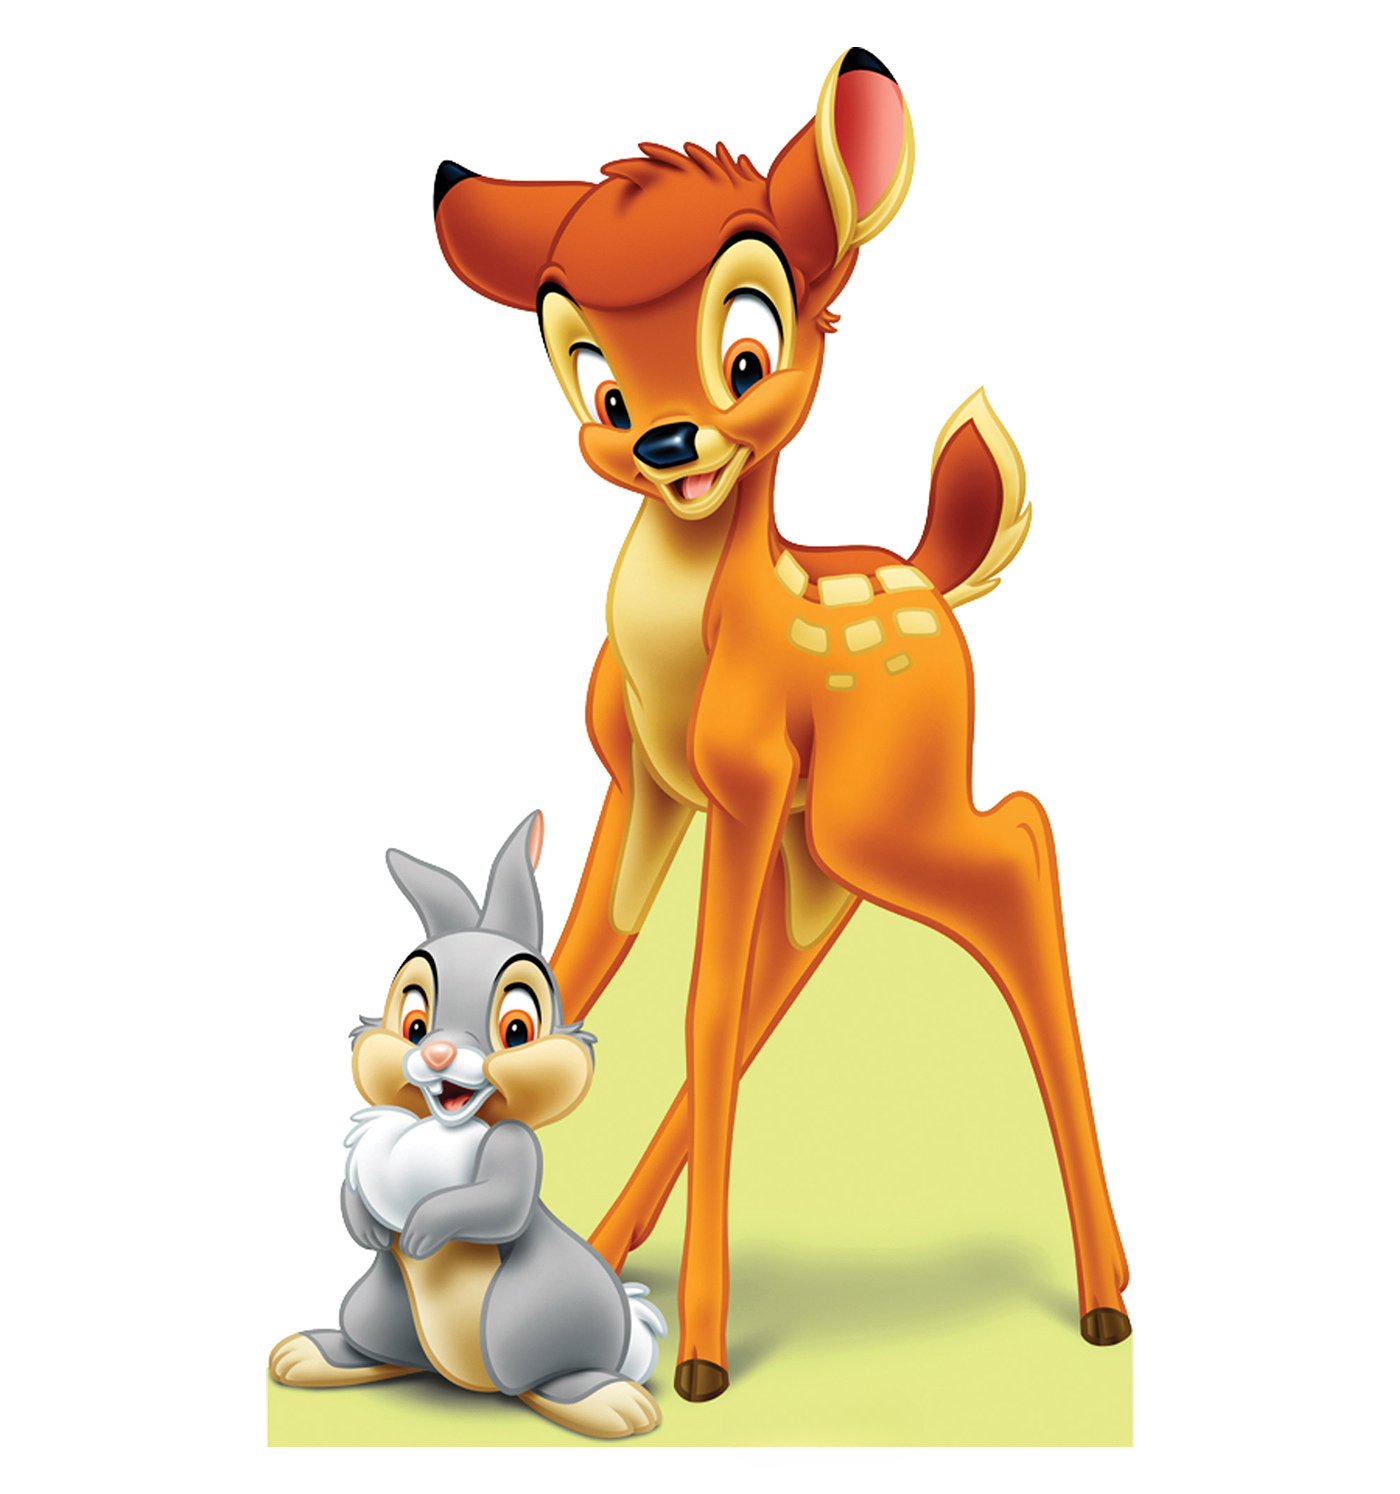 Disneysklassiker, Bambi, Zaubert Auch Weiterhin Generationen Von Zuschauern Ein Lächeln Ins Gesicht.